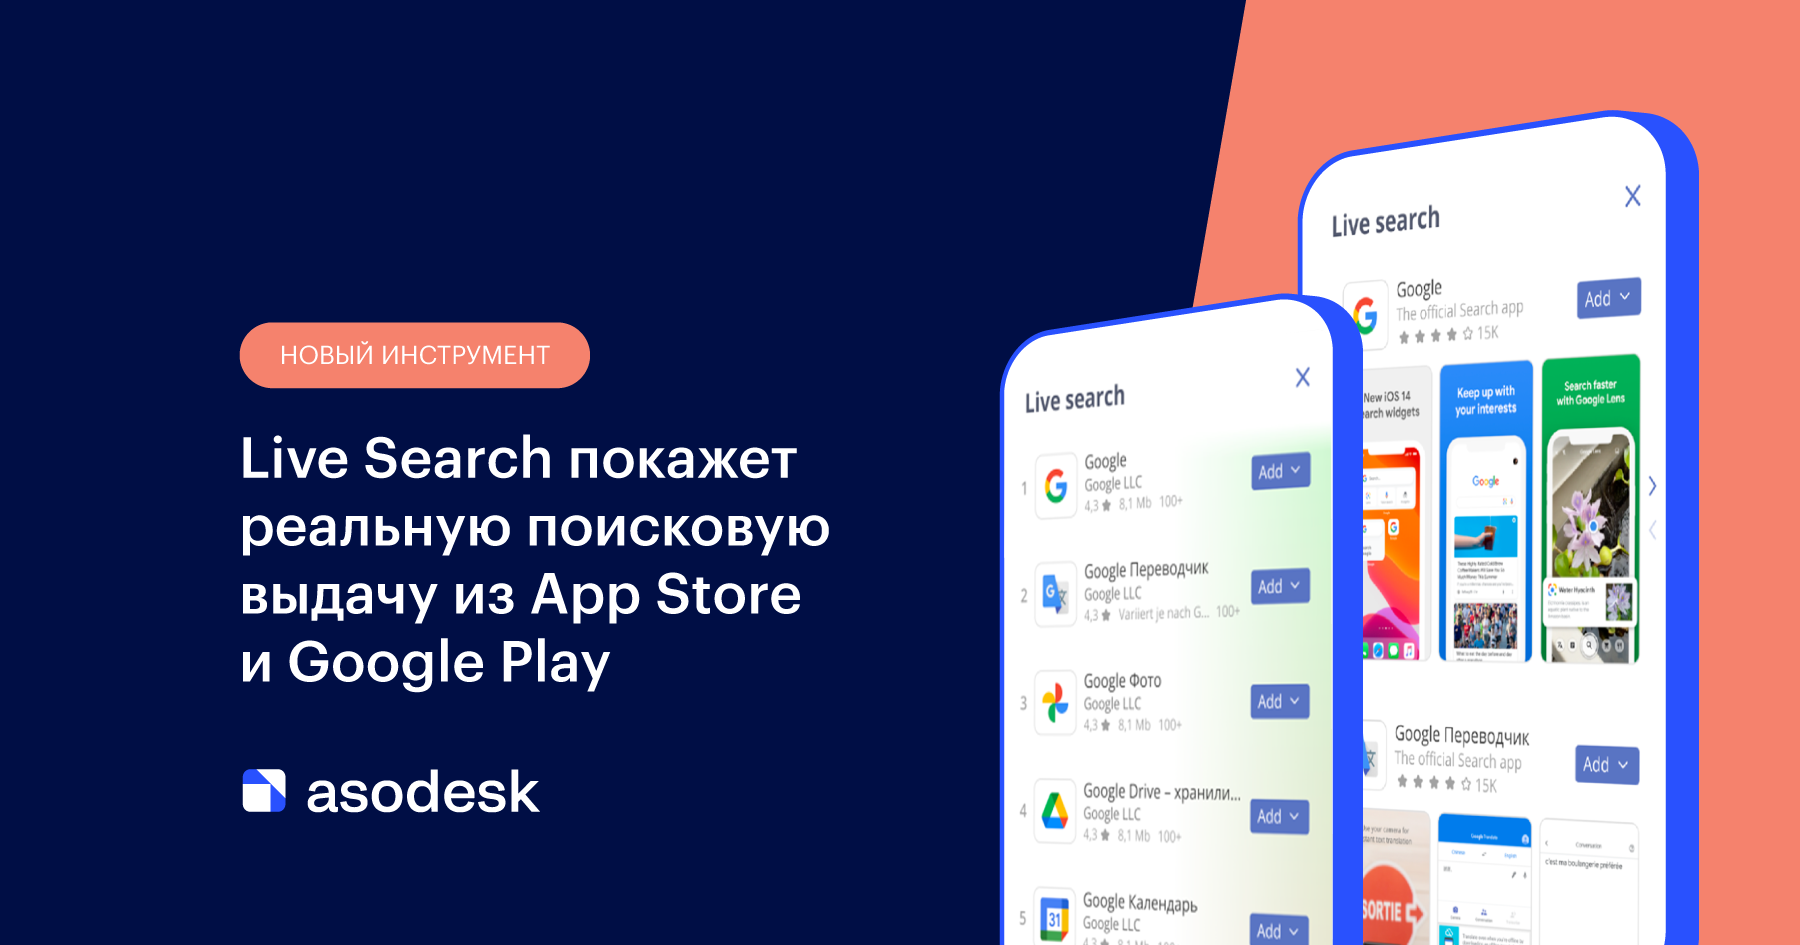 ﻿Новый инструмент Live Search покажет реальную поисковую выдачу из App Store и Google Play